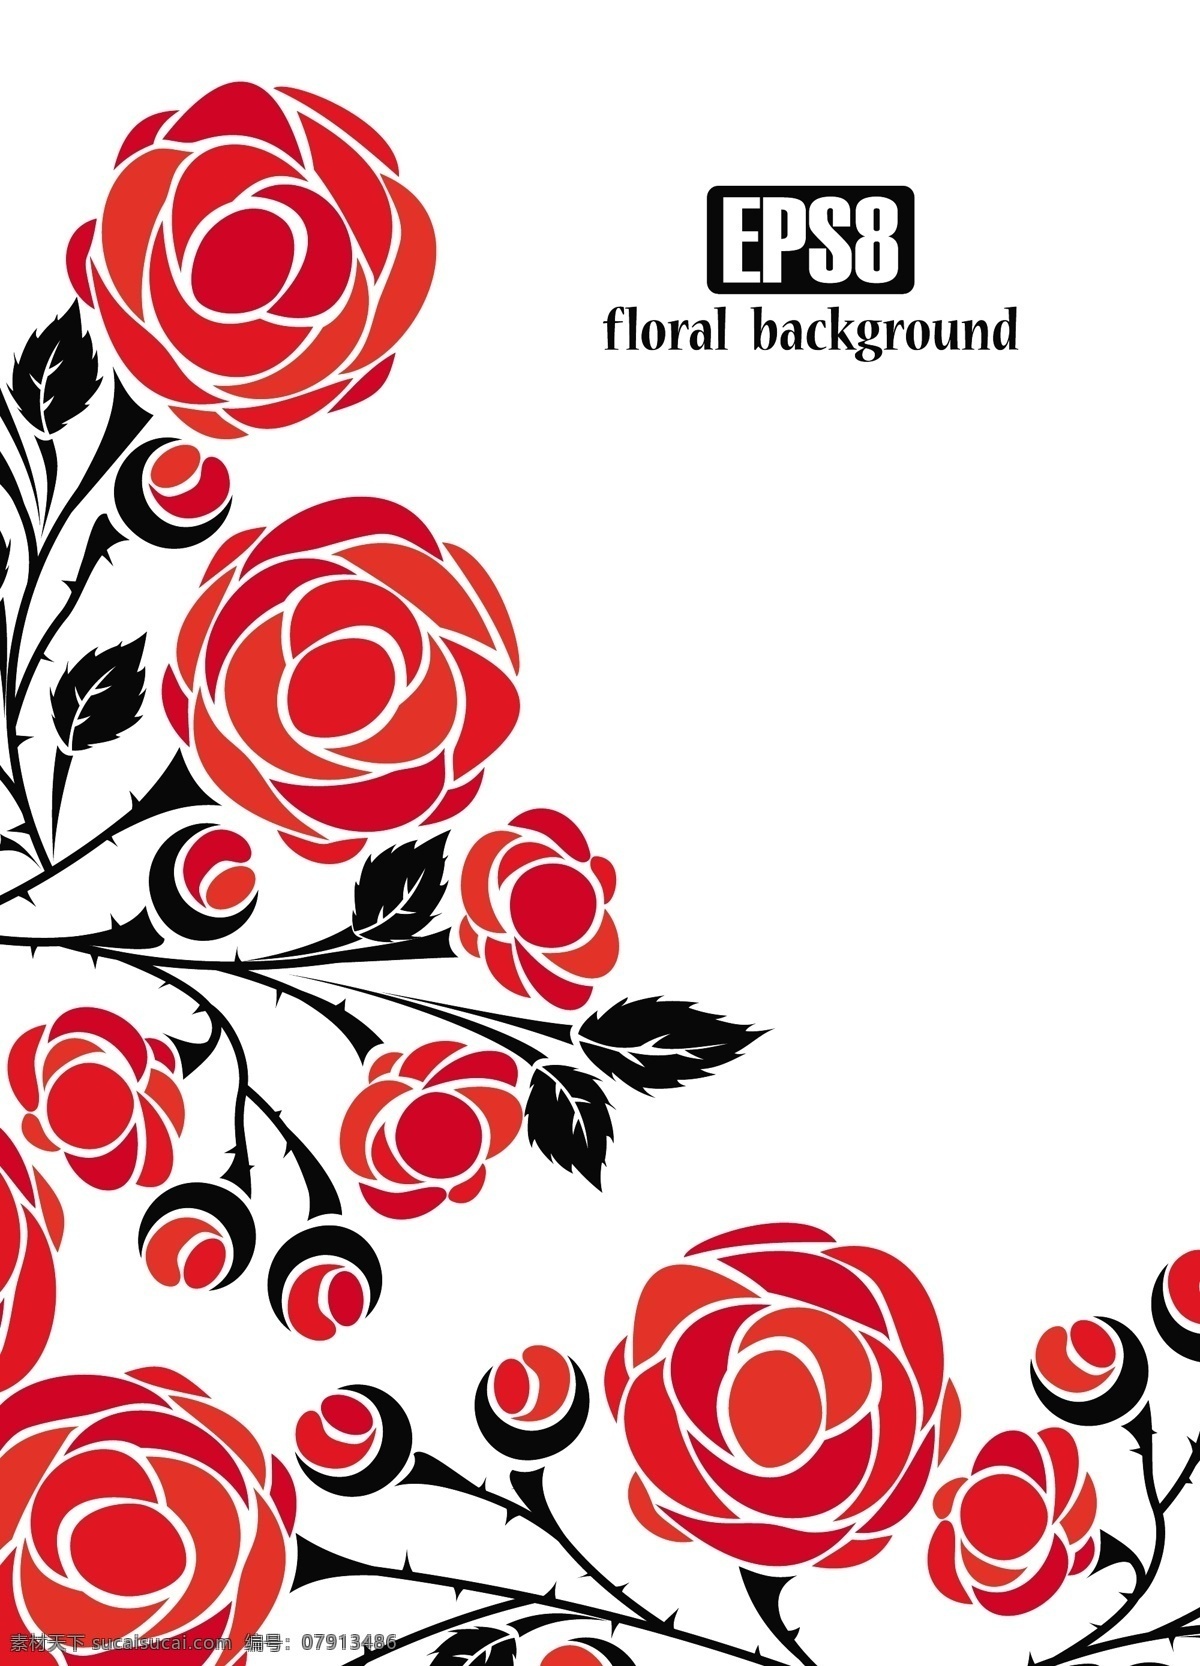 4玫瑰矢量 玫瑰 免费矢量 矢量图形 情人节 矢量 免费 红玫瑰 束 玫瑰的剪影 艺术片 枪炮 无 载体 eps的玫瑰 其他矢量图